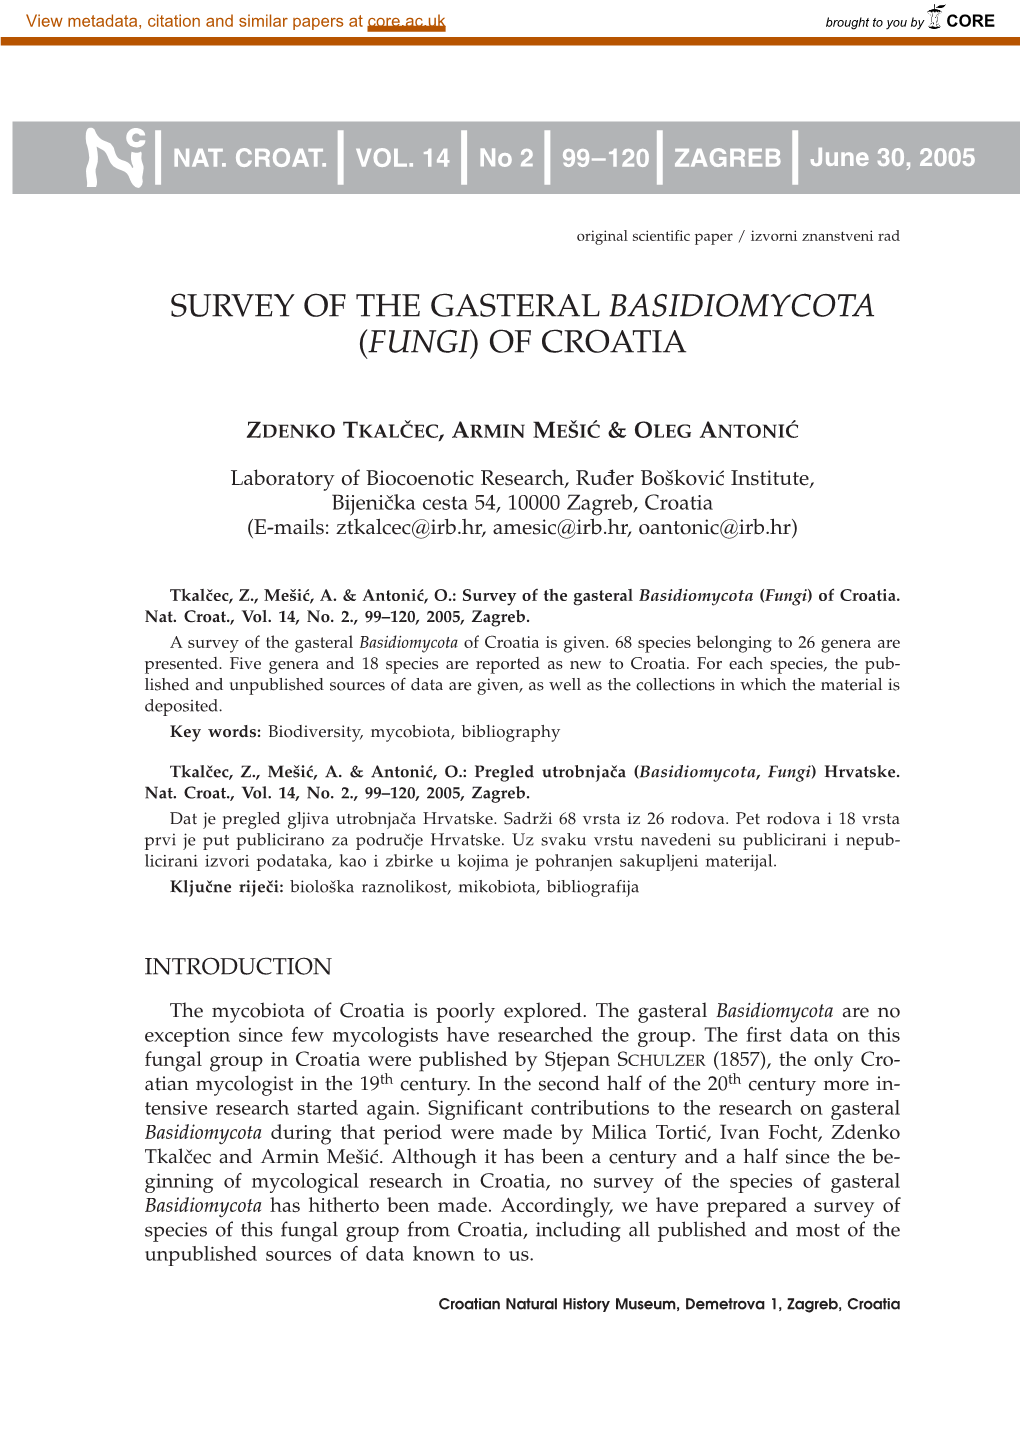 Survey of the Gasteral Basidiomycota (Fungi) of Croatia